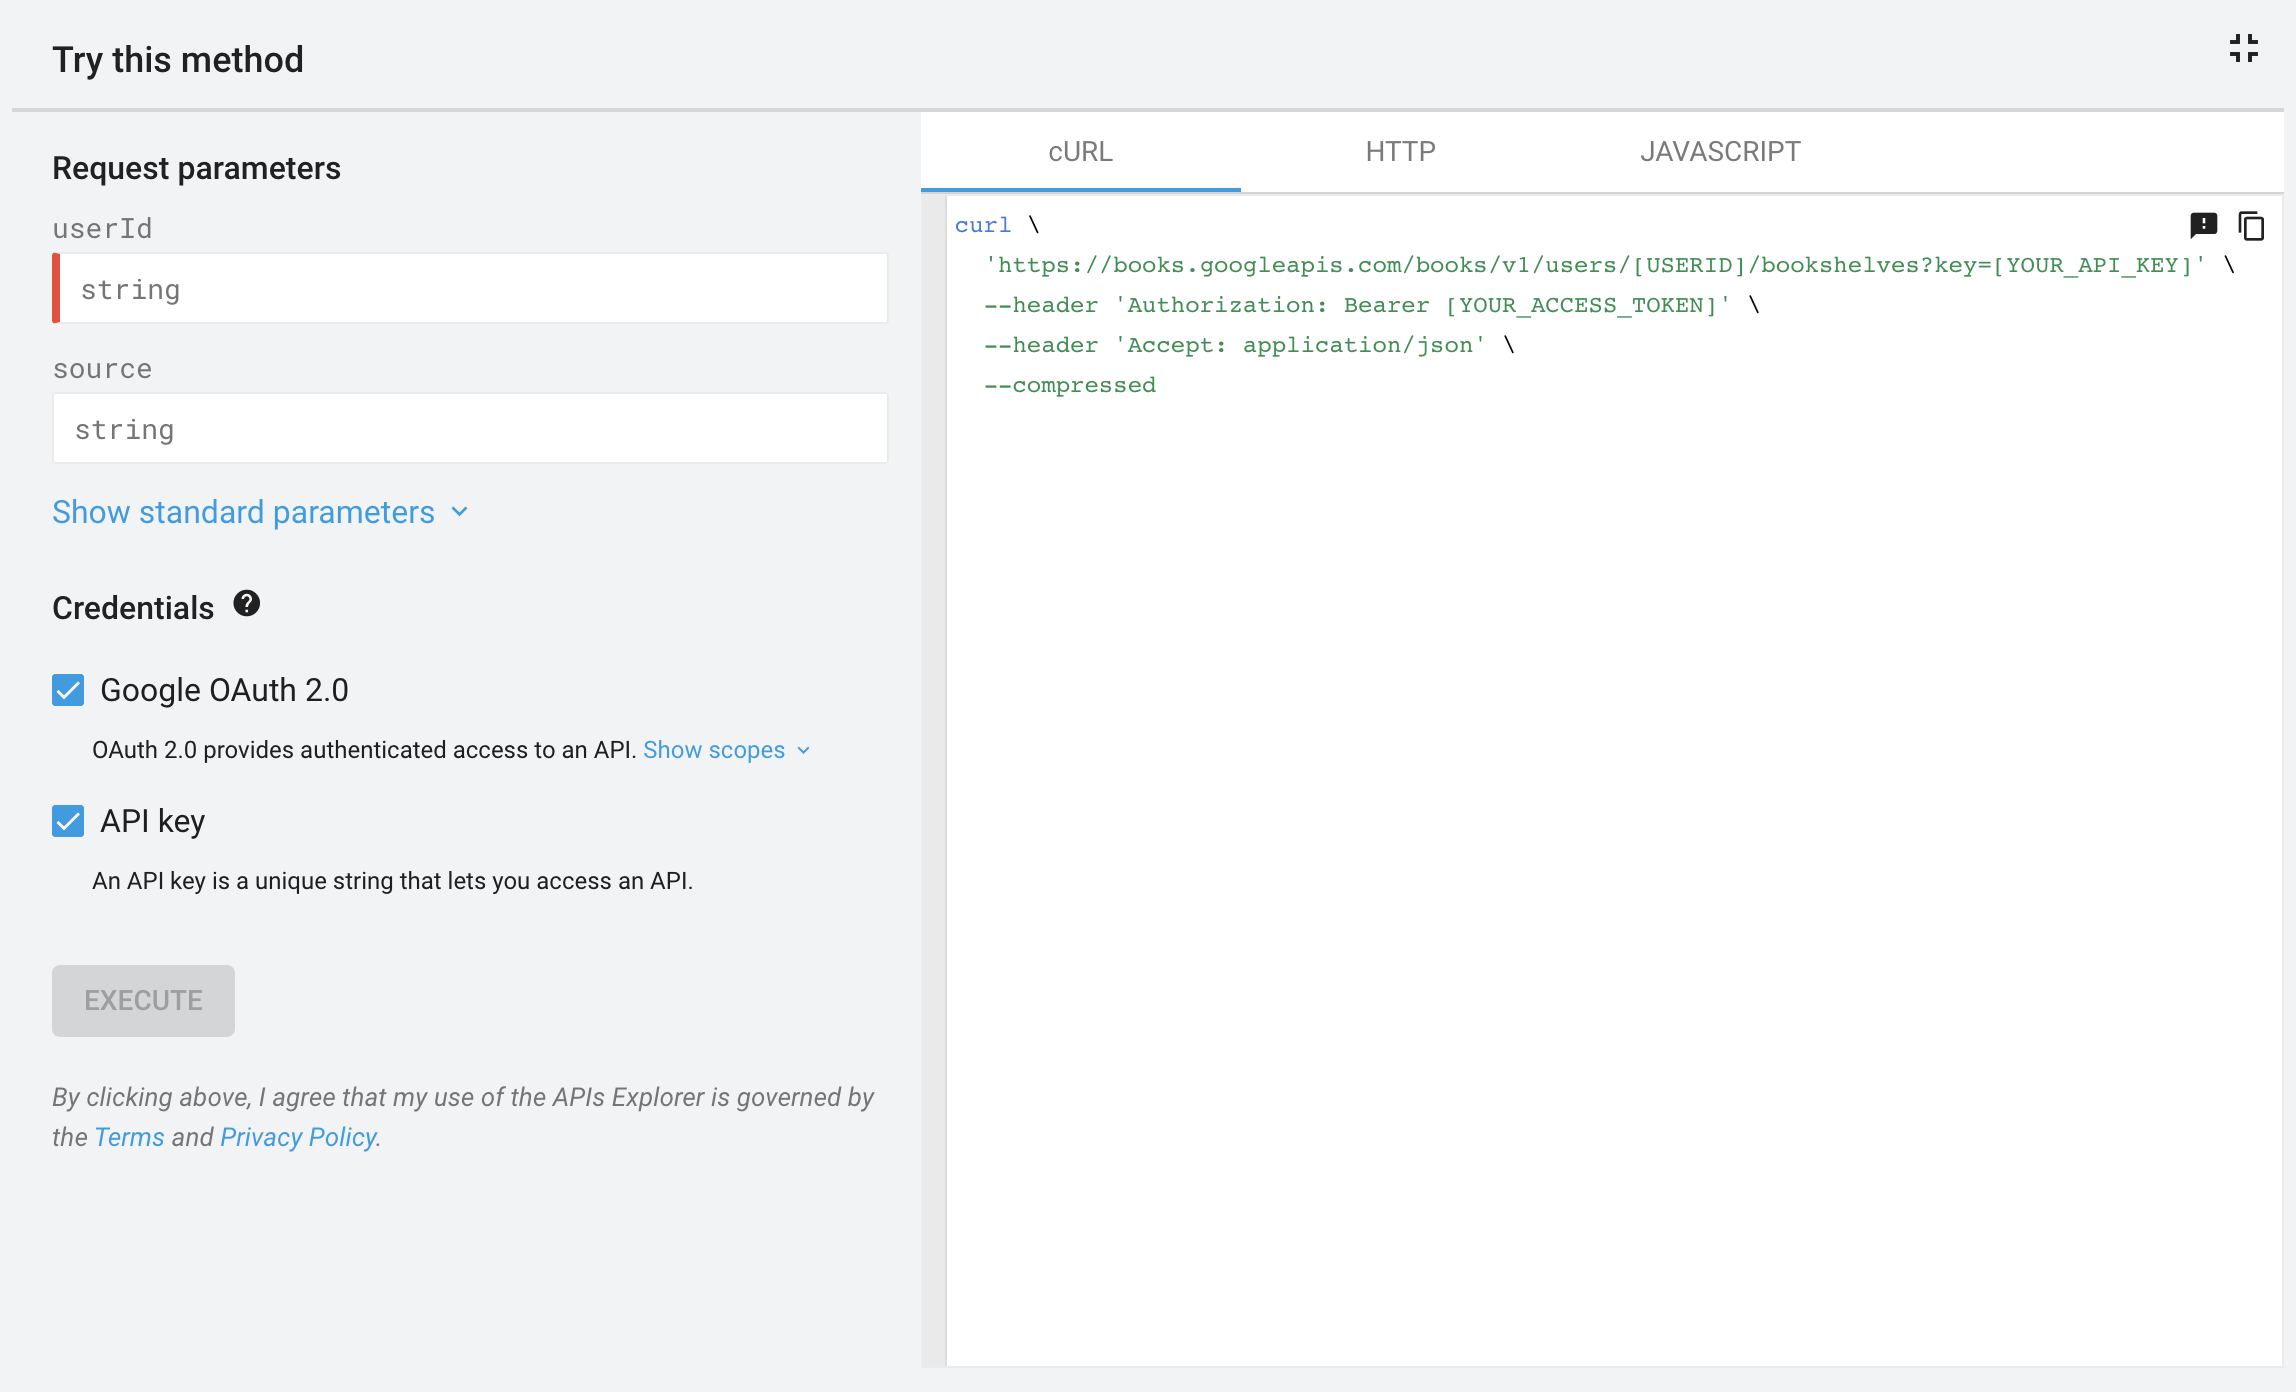 Panel de pantalla completa del Explorador de API para la API de Google Libros